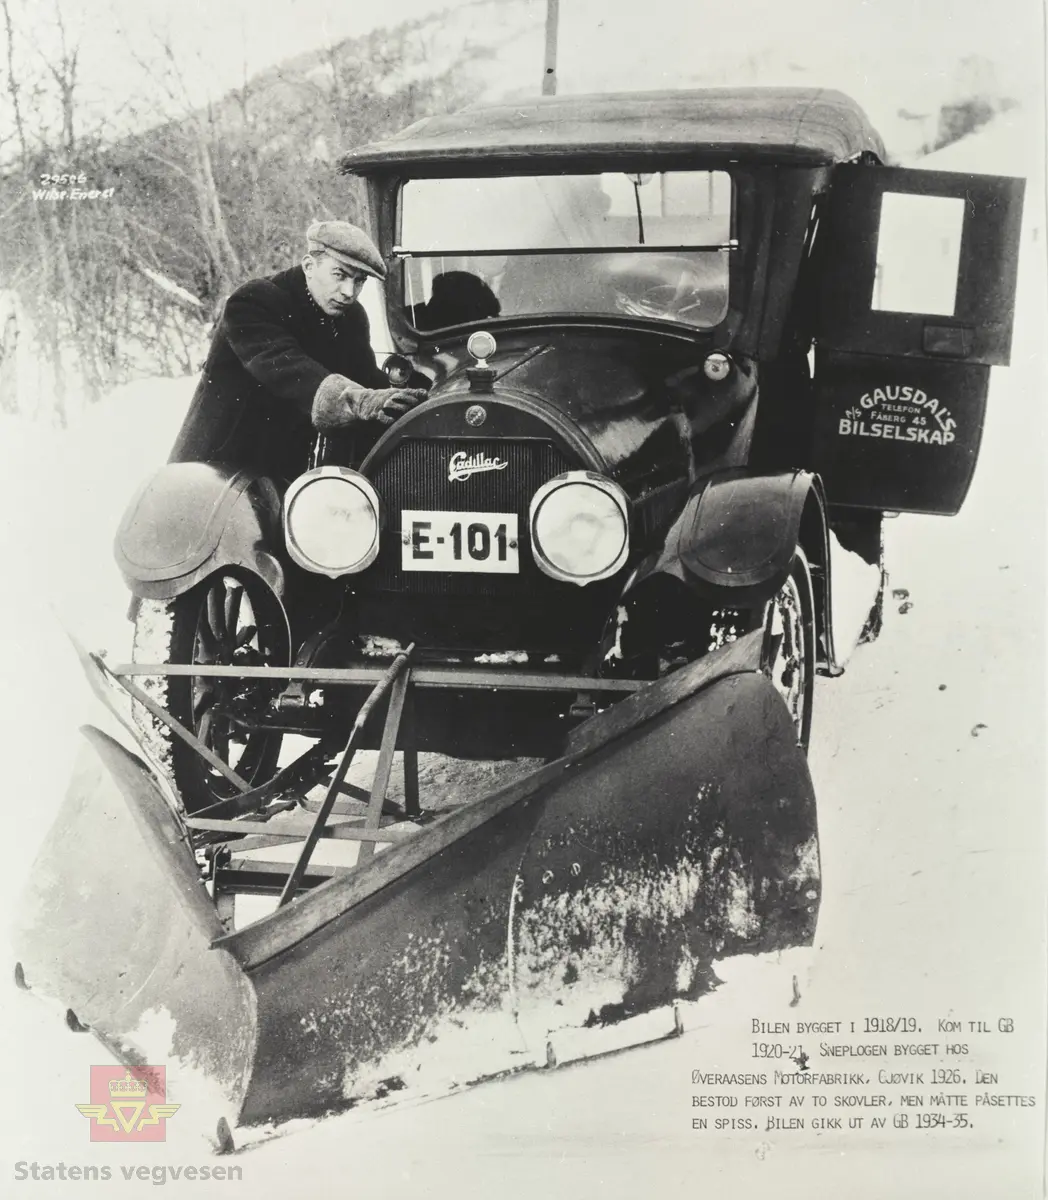 Cadillac med kjennetegn E-101 og påmontert snøplog, ca. 1926-1930. Sjåfør Arne Haugeng fra Østre Gausdal. Bilen er en 1919 modell og kom til AS Gausdal Bilselskap i 1920-21. Snøplogen er bygget på Øveraasen Motorfabrikk på Gjøvik i 1926. Den besto først av to skovler foran hvert hjul, men ble påsatt en spiss. Bilen gikk ut av Gausdal Bilselskaps bruk i 1934-35. Se tekst på bildet som er merket: "29506. Wilse. Enerett". 

Opplysninger 09.03.2020: "E-101 ble første gang registrert i mai 1919 og kjøpt brukt av Gausdal Bilselskap i 1924. Bilder som Anders Beer Wilse tok av brøytingen i Gausdal er tatt 12. februar 1927. Kilde: Nasjonalbiblioteket galleriNOR. 
Opplysninger fra Thor Bjerke. 

Norges Bilbok 1935 bekrefter at  Cadillac E-101 er en 1919-modell. Står også i Bilboken for Norge 1925 og 30, men nummeret mangler i 1922-utgaven. Opplysninger fra Ivar Stav. 

Se Relasjon lenger ned på siden der vises flere bilder fra AS Gausdal Bilselskap og av Cadillac fotografert 28.03.1927. Fra Veidirektørkontoret. Underskrevet med initialer til Thor Larsen, som var avdelingsingeniør ved Vegdirektoratet 1926-1935.